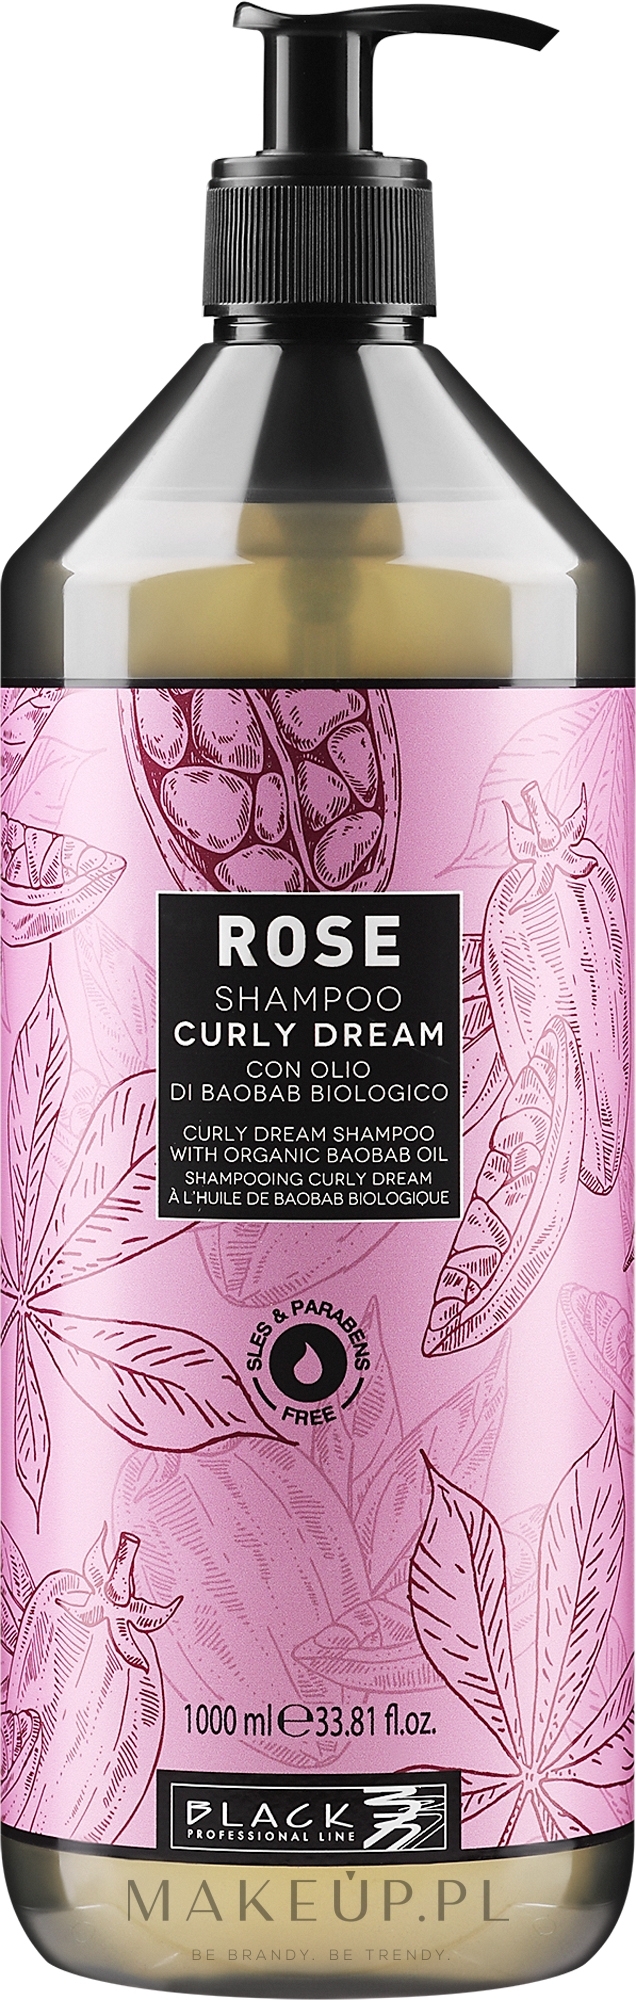 Szampon do włosów kręconych - Black Professional Line Rose Shampoo Curly Dream  — Zdjęcie 1000 ml